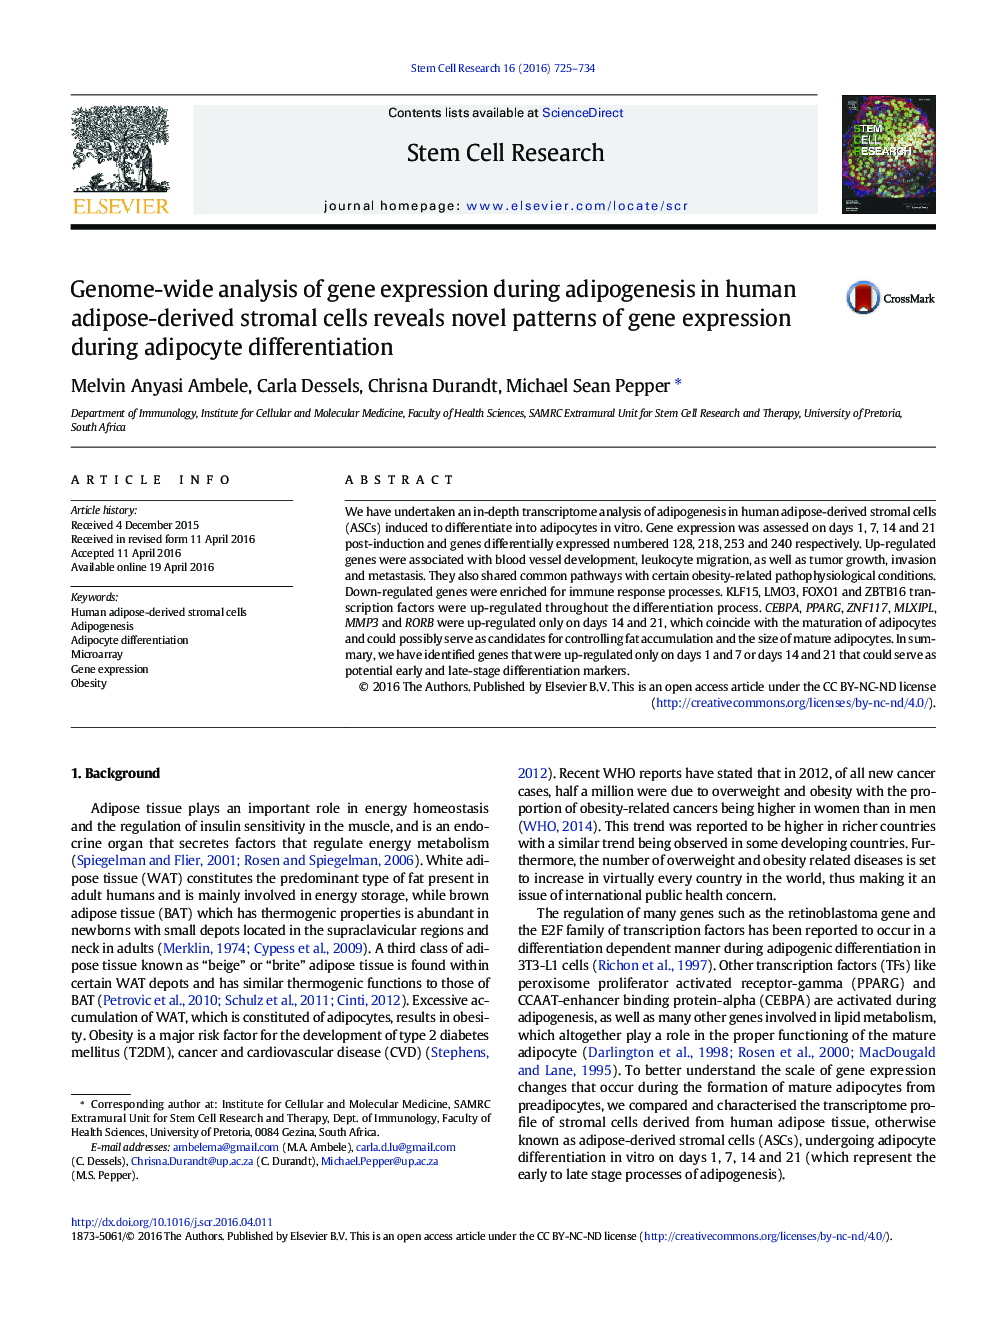 تجزیه و تحلیل ژن از بیان ژن در طی آدیپوژنز در سلول های استرومایی حاصل از چربی انسان نشانگر الگوهای نوین بیان ژن در زمان تمایز آدیپوسیت است 